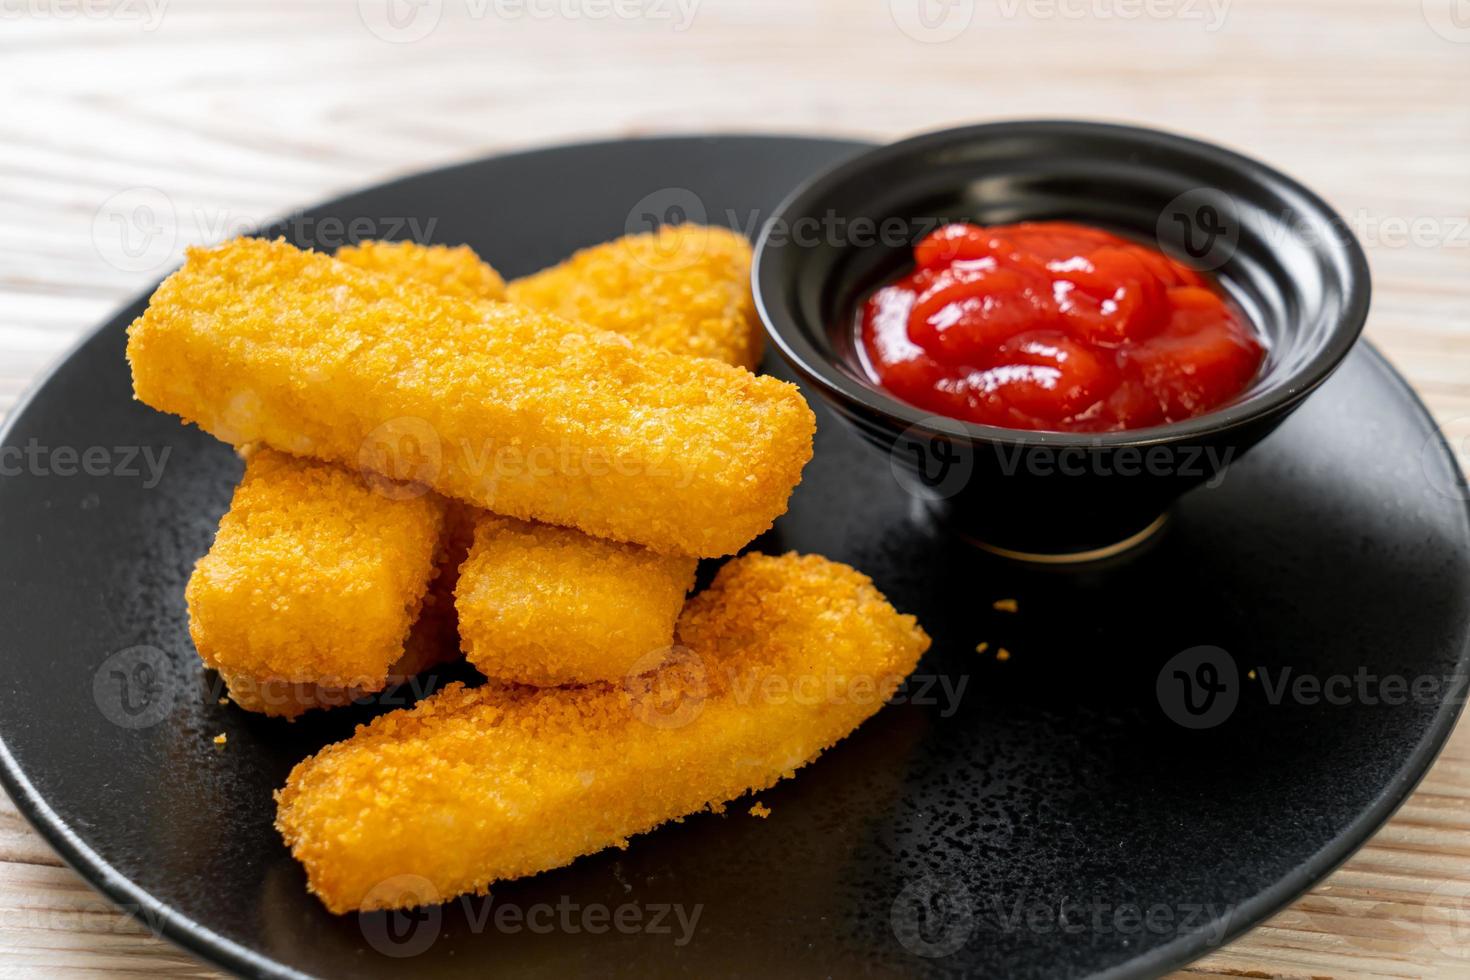 bastoncini di pesce fritti croccanti con pangrattato serviti alla piastra con ketchup foto